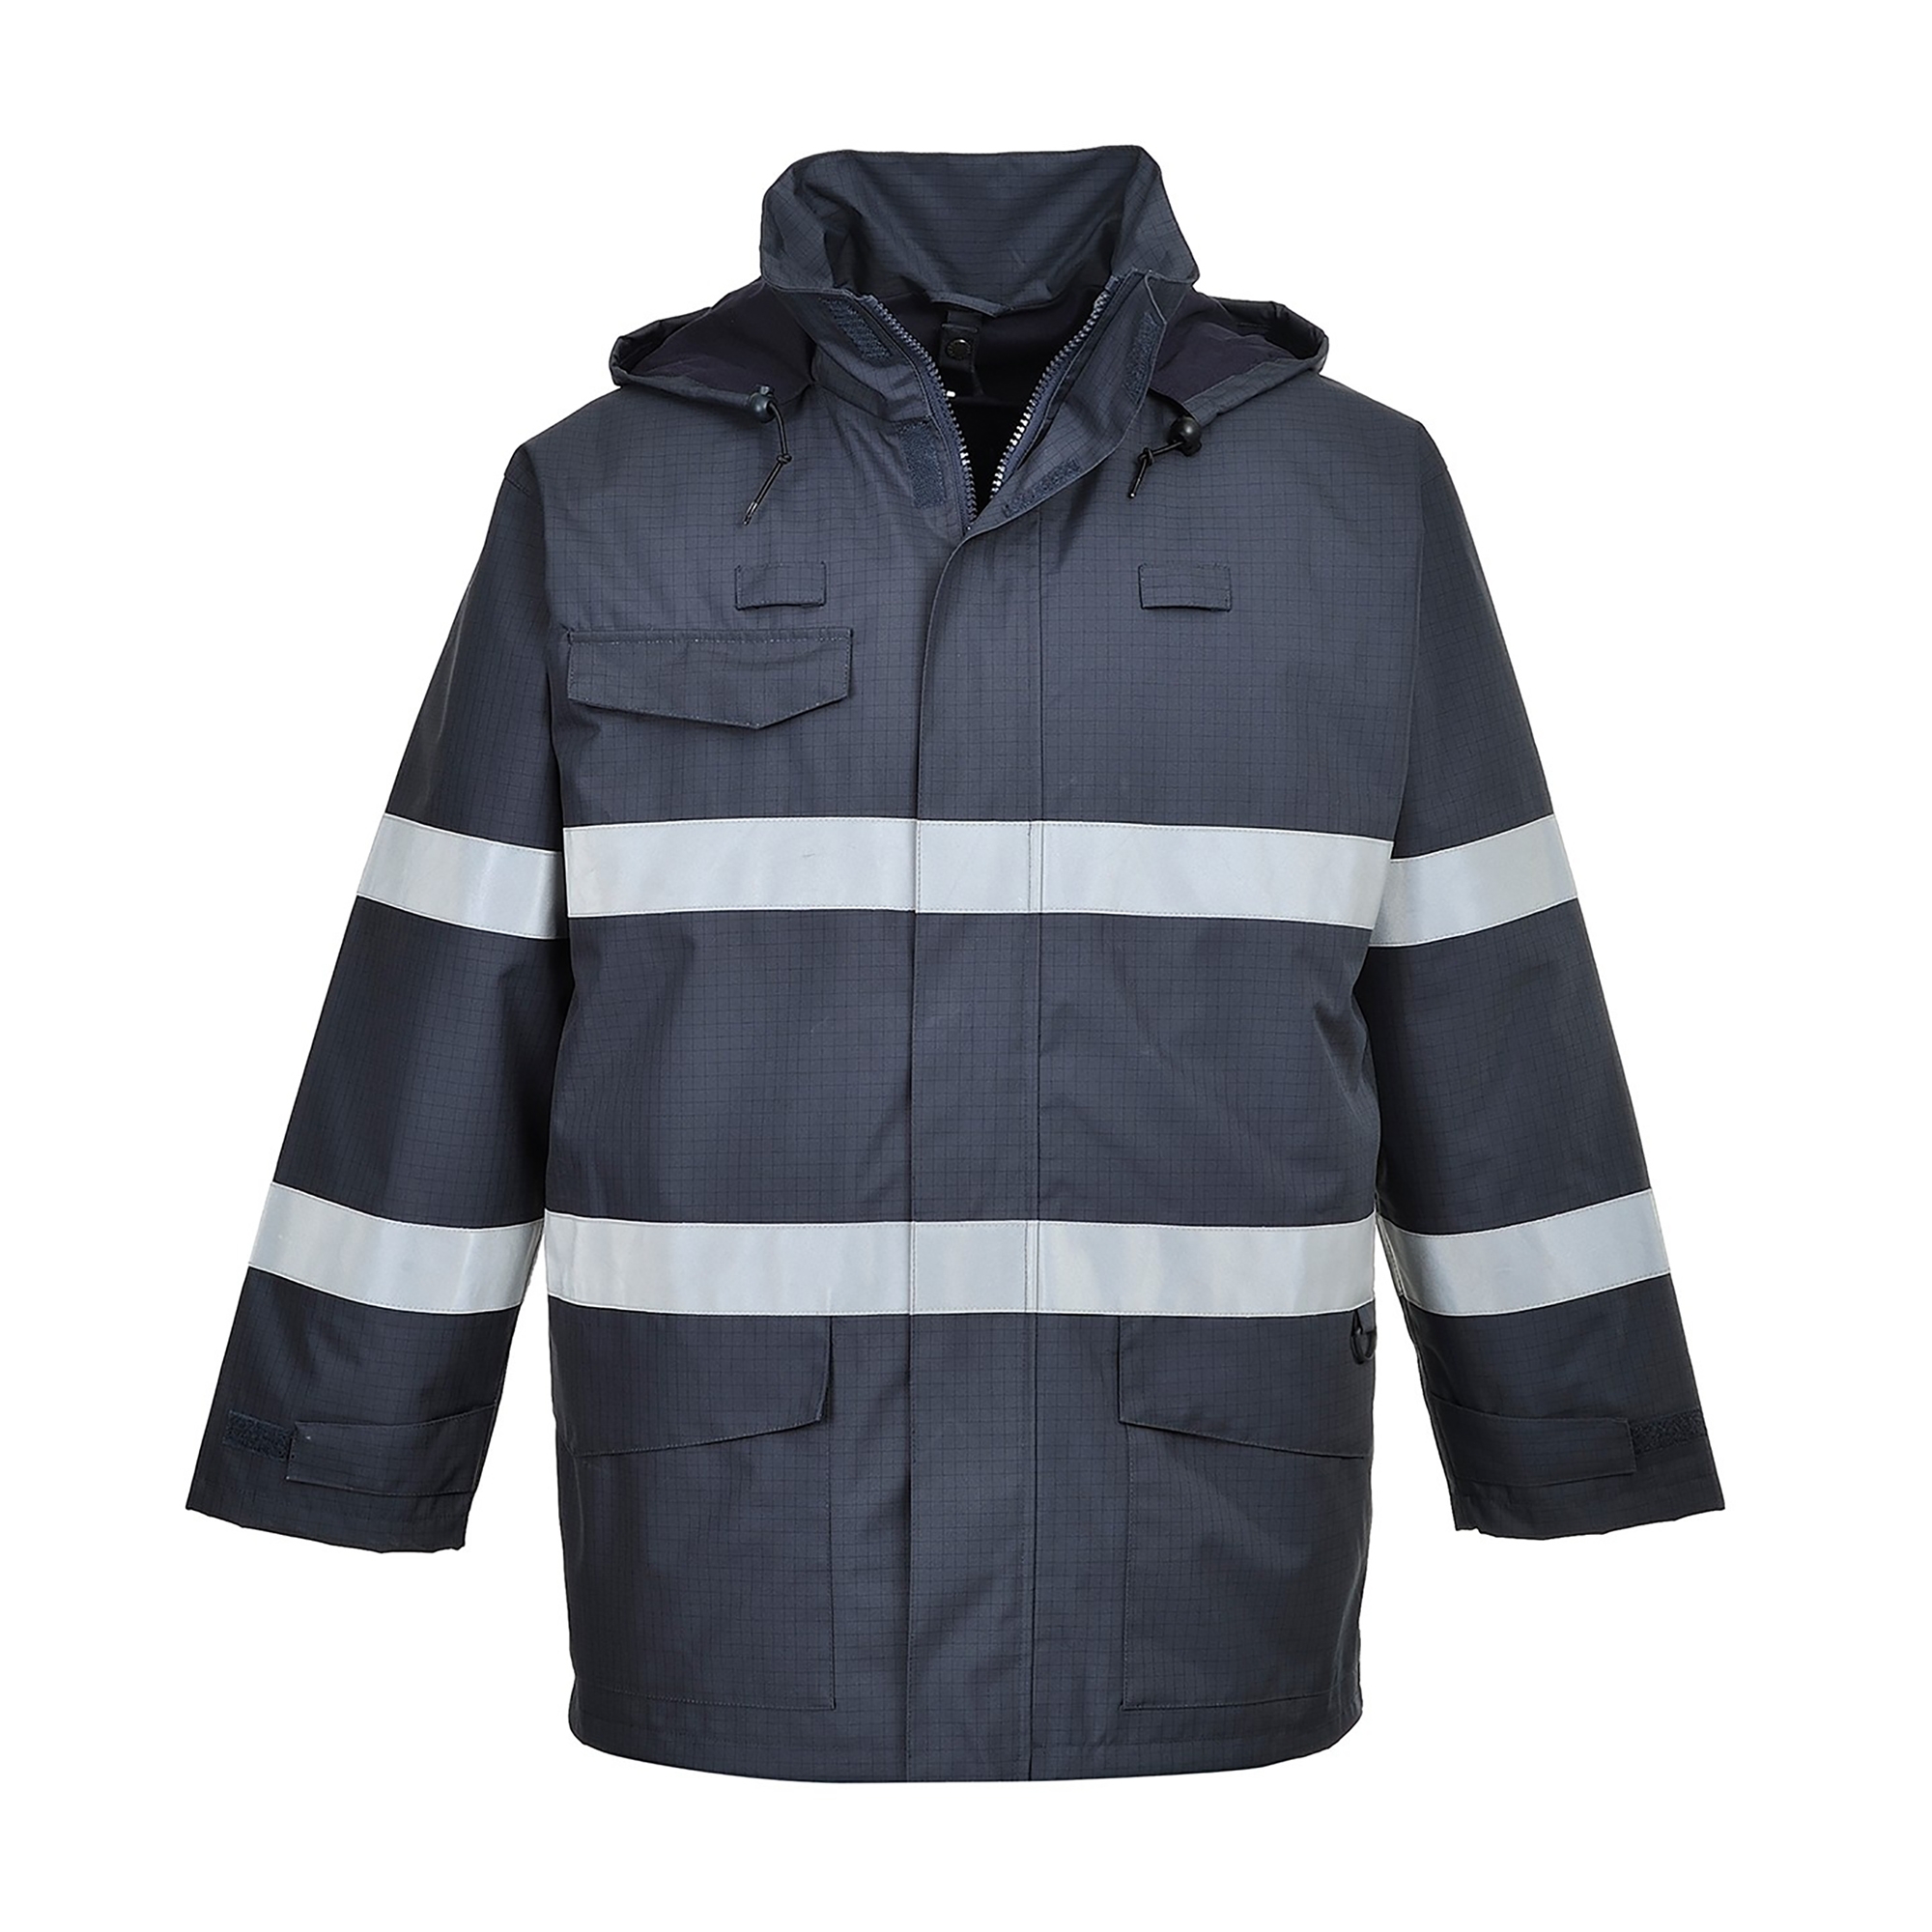 Portwest Workwear Mens Hi-VIS Multi Protection Jacket 